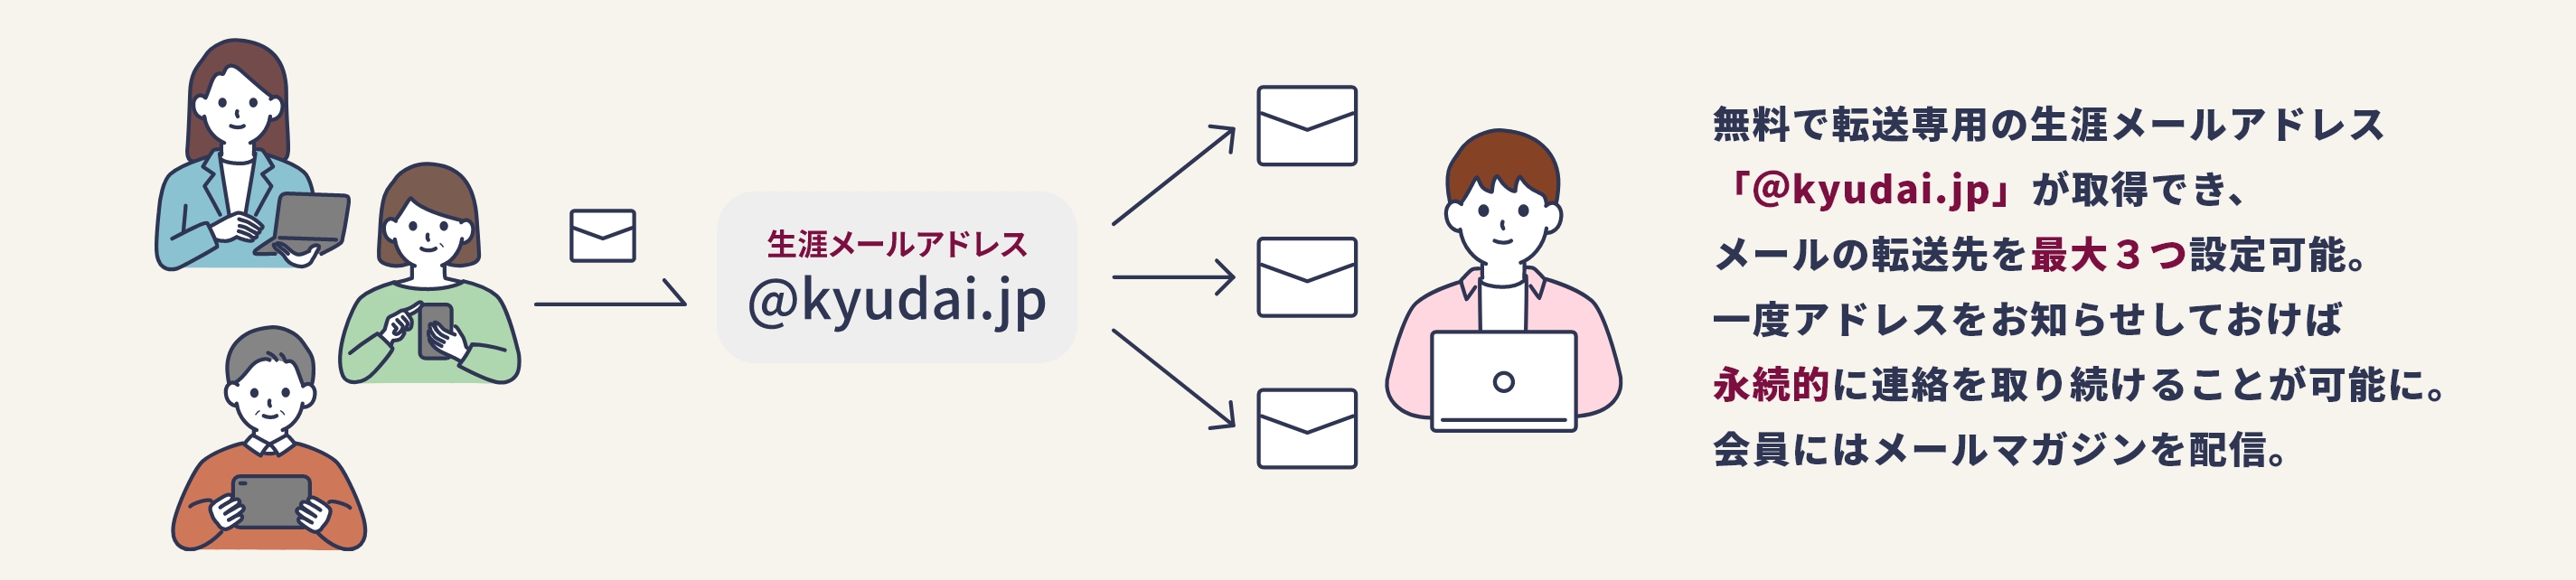 無料で転送専用の生涯メールアドレス「@kyudai.jp」が取得でき、メールの転送先が最大３つ設定可能。一度アドレスをお知らせしておけば永続的に連絡を取り続けることが可能に。